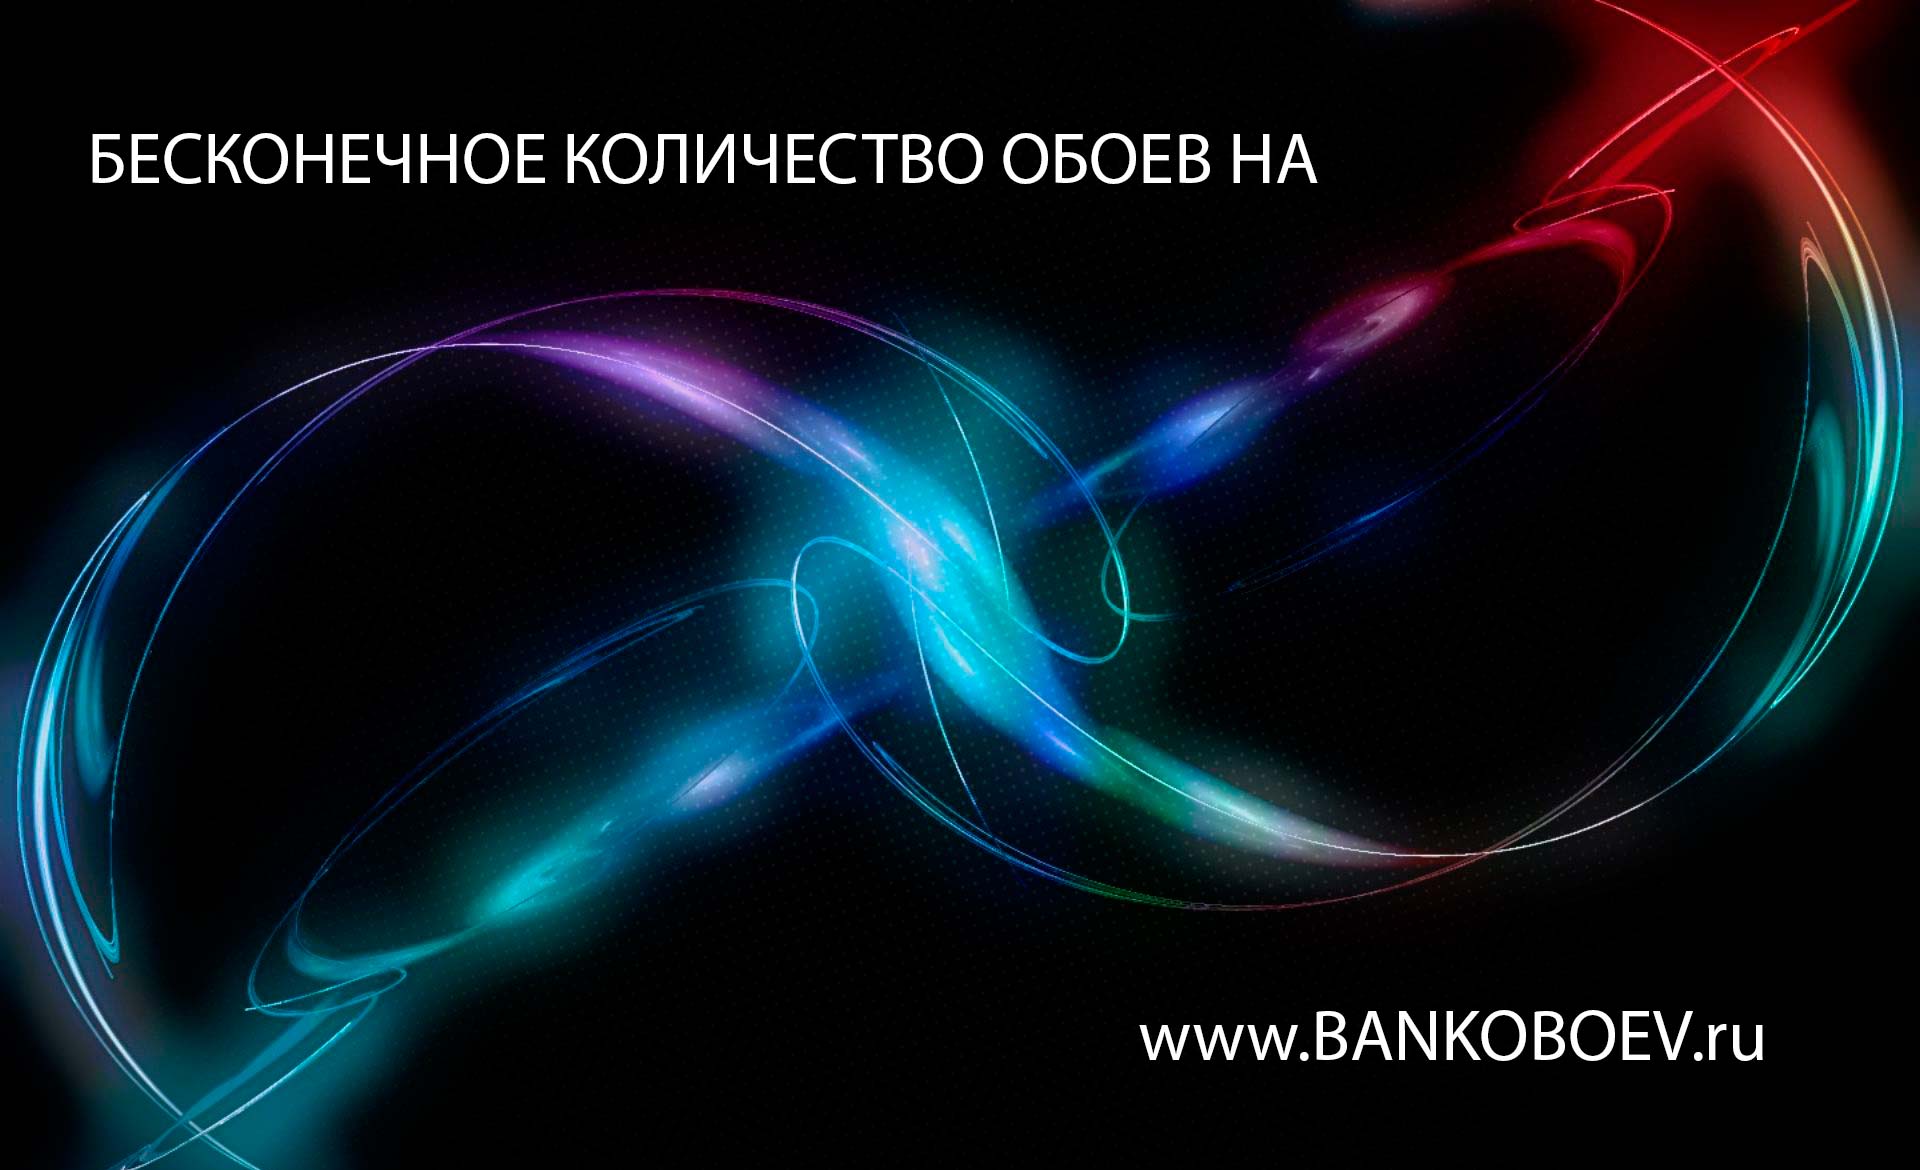 Source Bankoboev Ru Image Nty2mjc